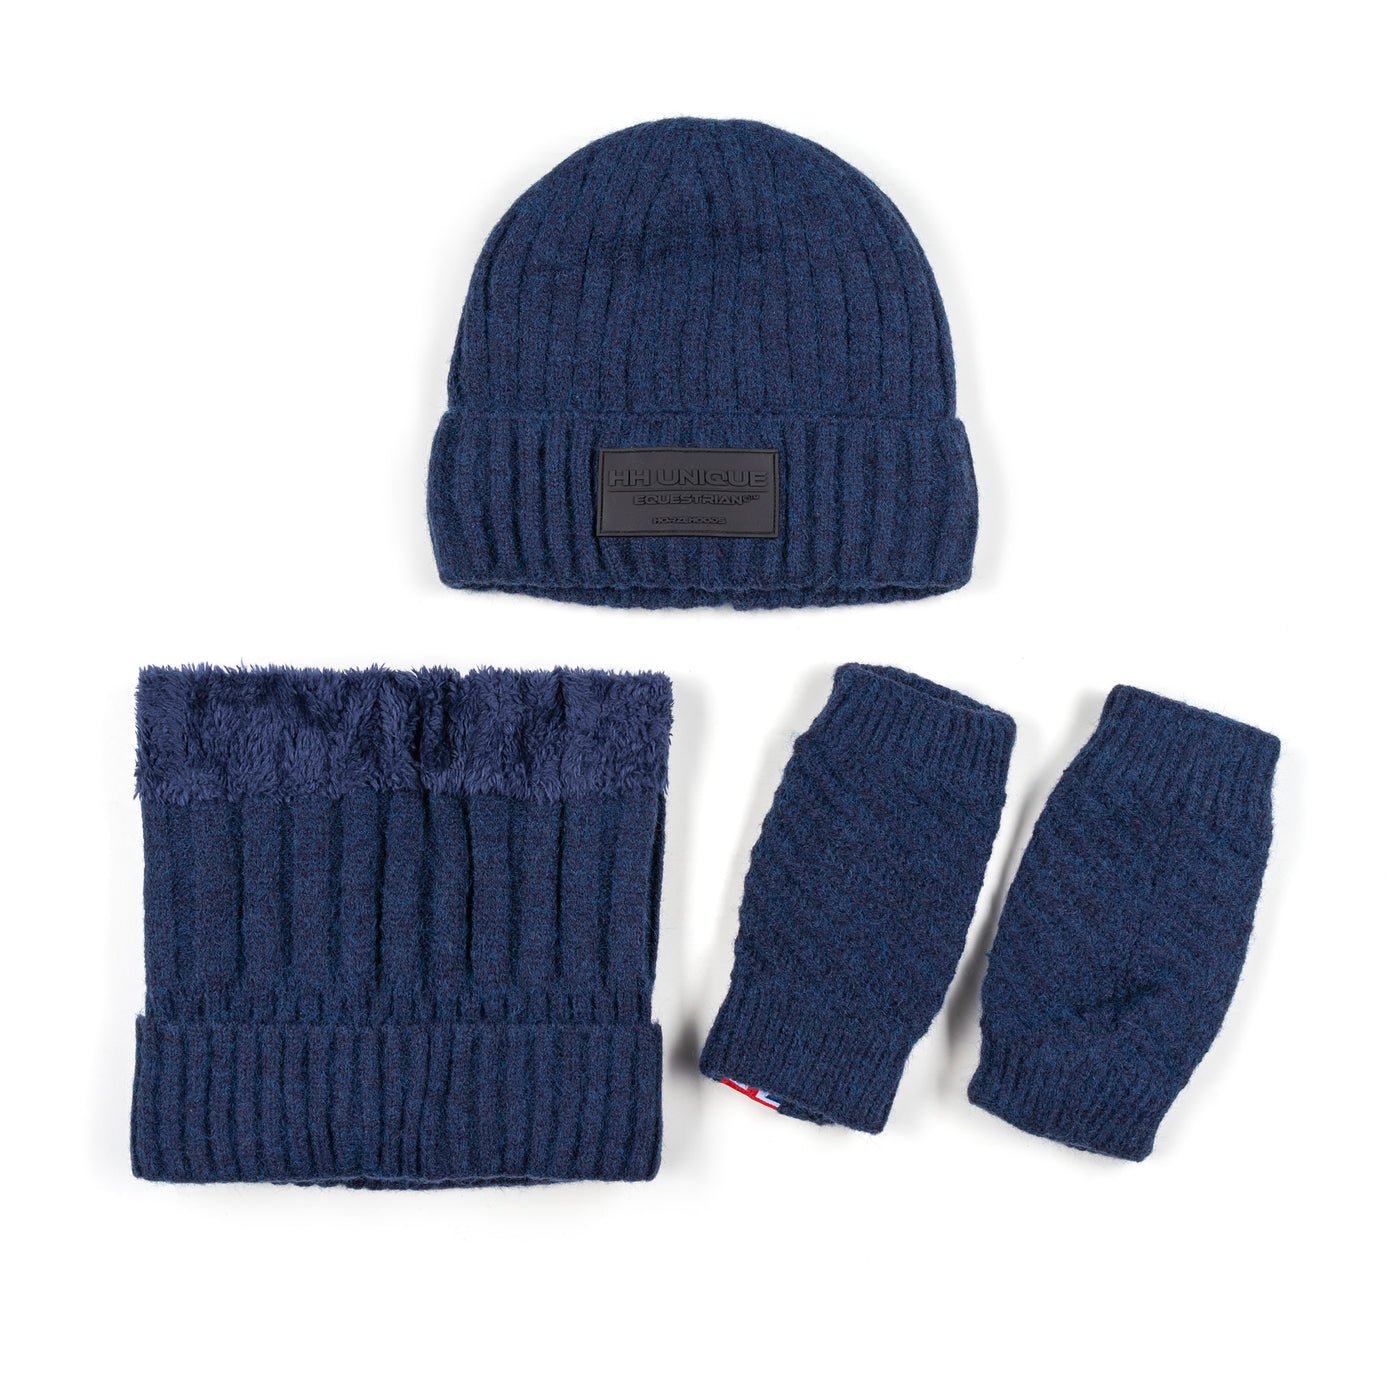 Navy Thermal 3 Piece Knit Kit